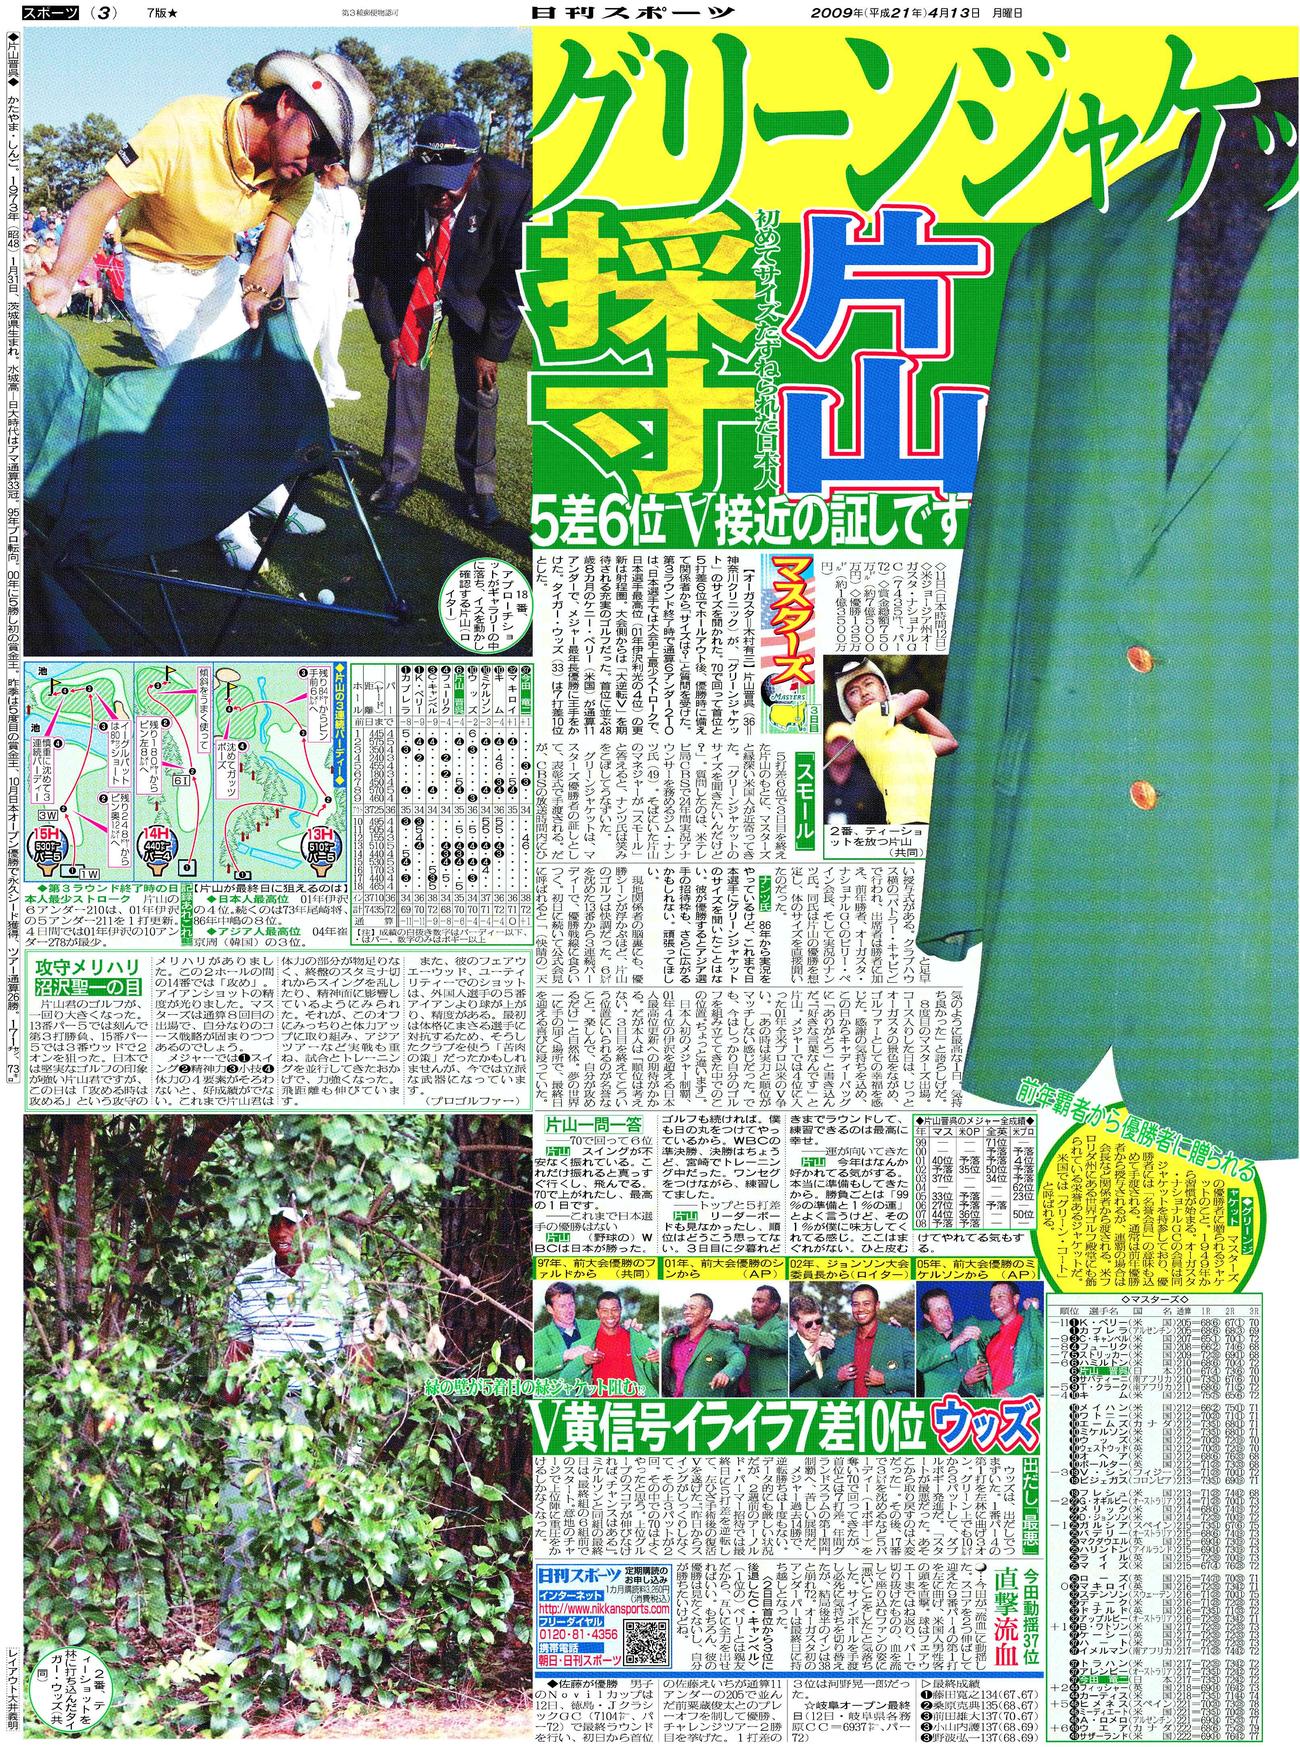 片山のグリーンジャケット採寸を報じる09年4月13日付日刊スポーツ東京本社版3面